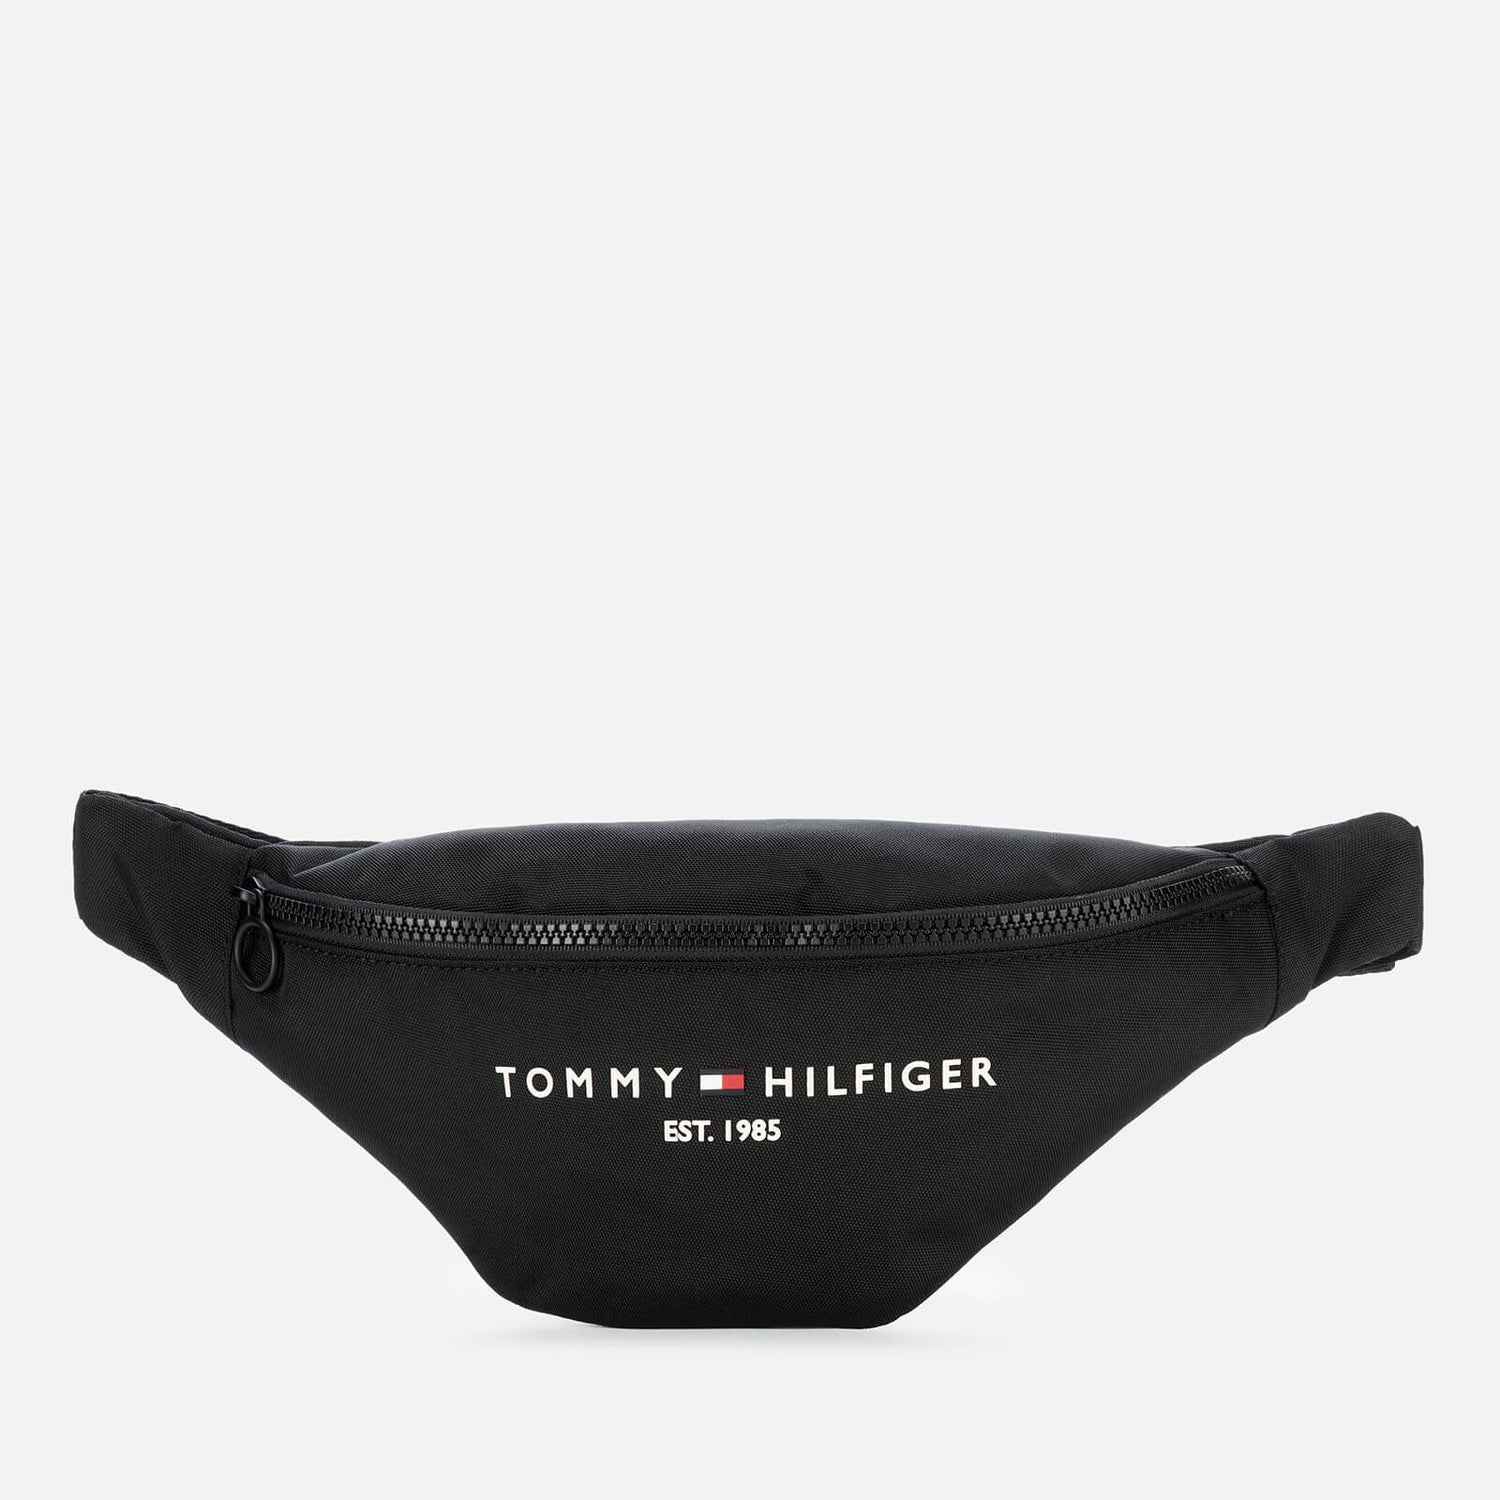 Tommy Hilfiger Men's Established Cross Body Bag - Black